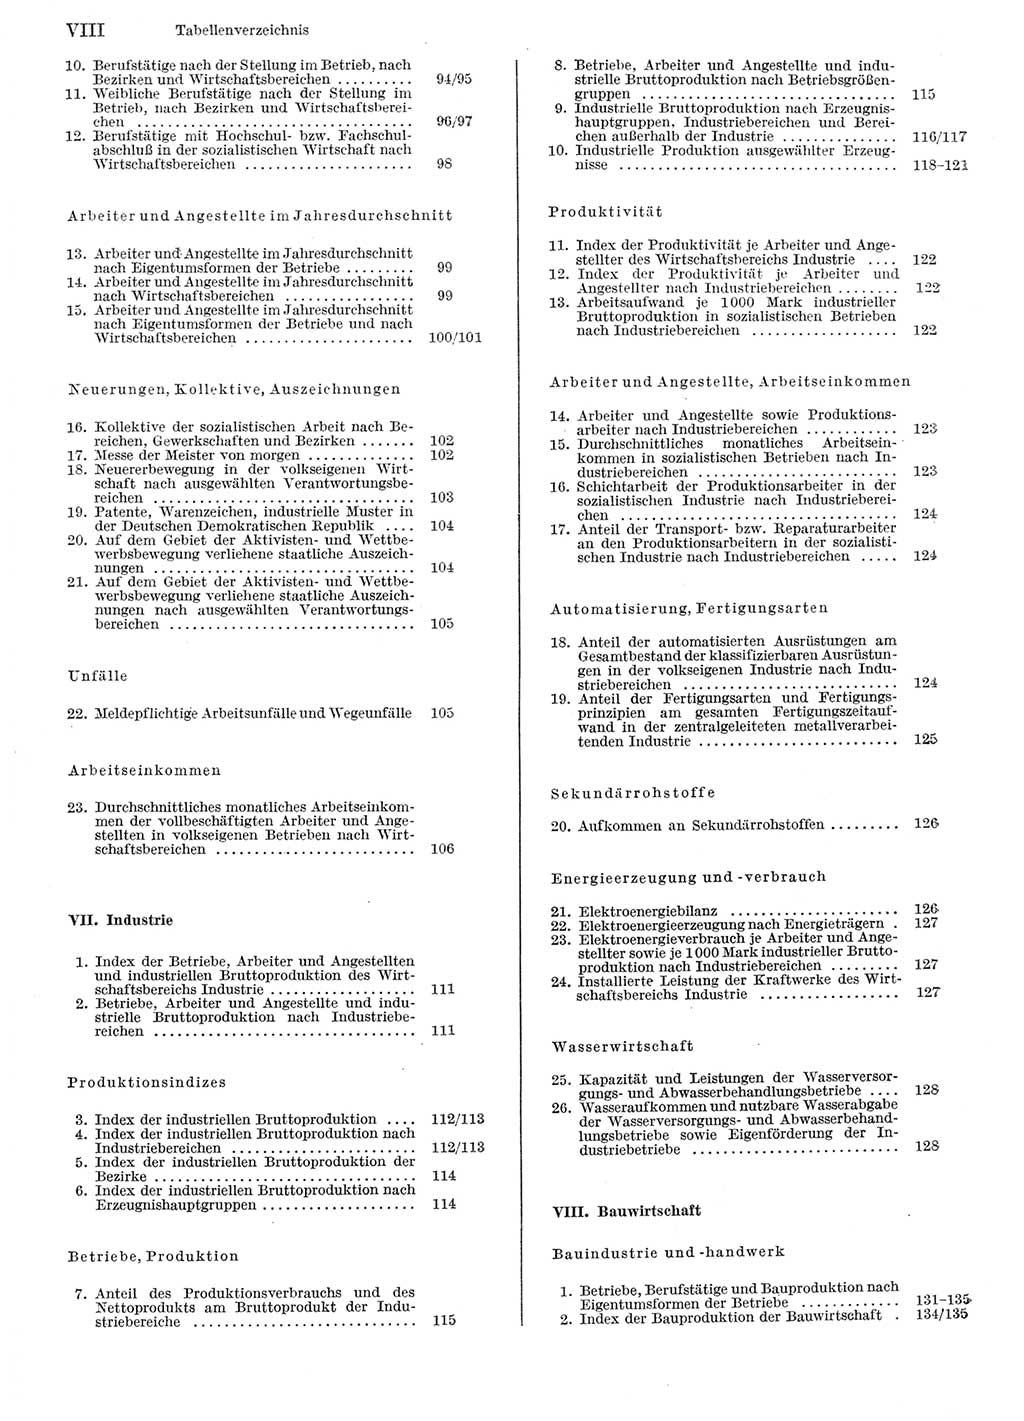 Statistisches Jahrbuch der Deutschen Demokratischen Republik (DDR) 1979, Seite 8 (Stat. Jb. DDR 1979, S. 8)